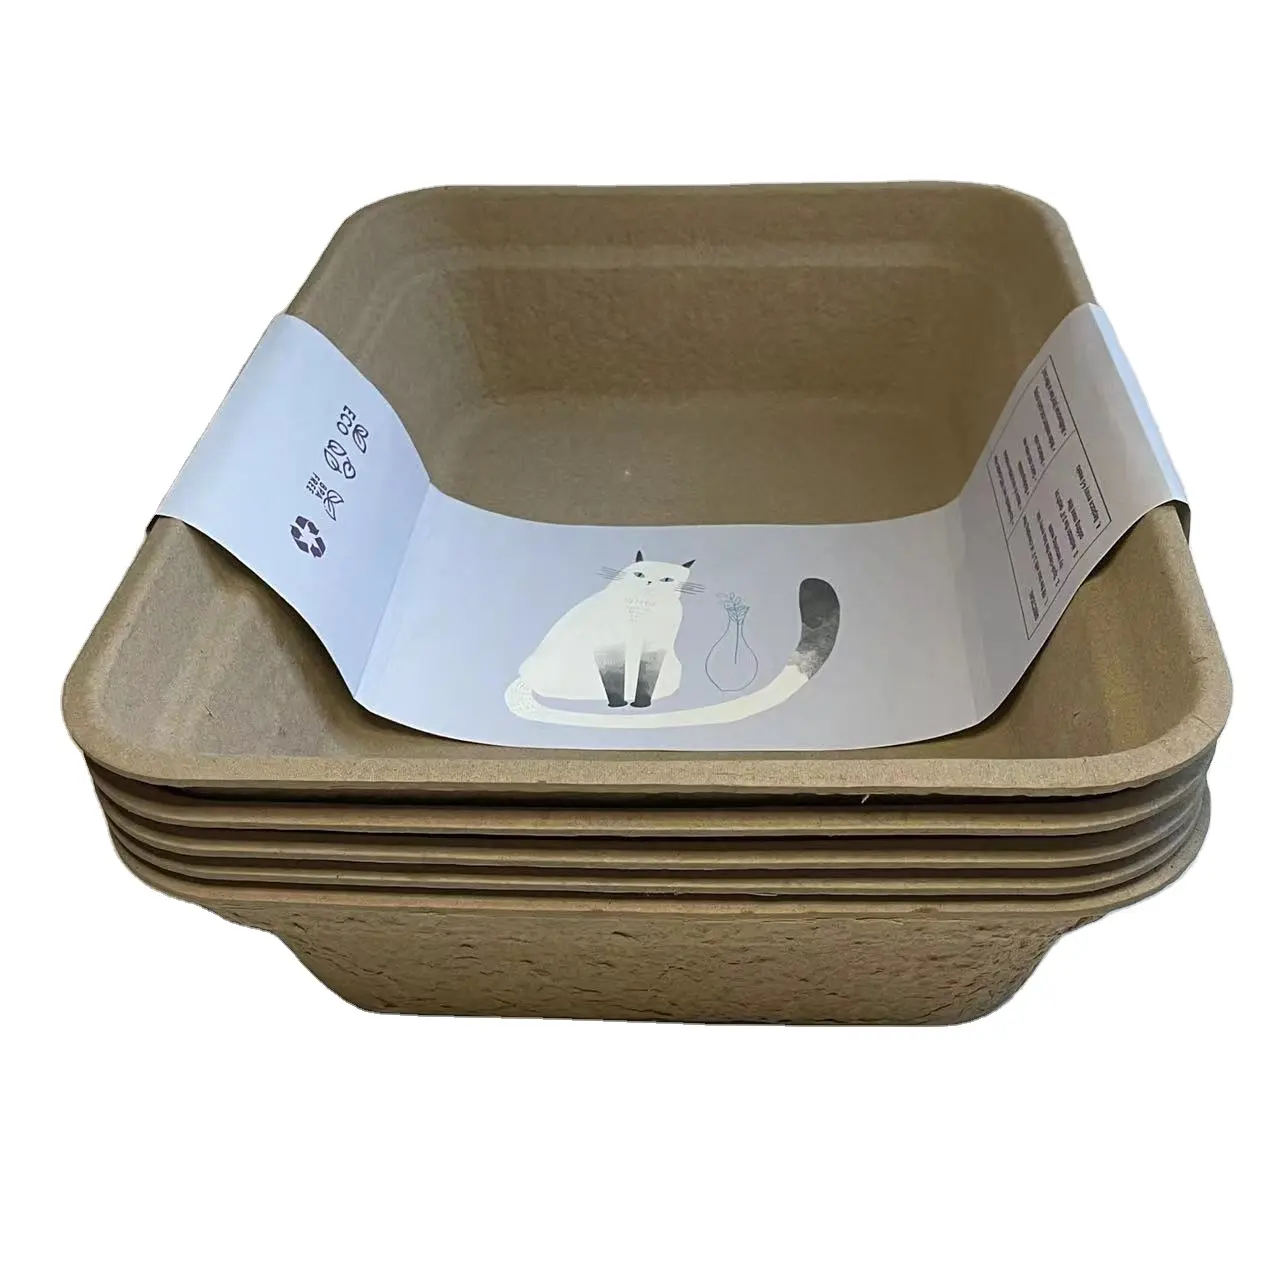 Fournisseur en gros de la chine, boîte de moule de pâte à papier recyclable jetable, bac à litière pour chat, boîte à litière pour chat